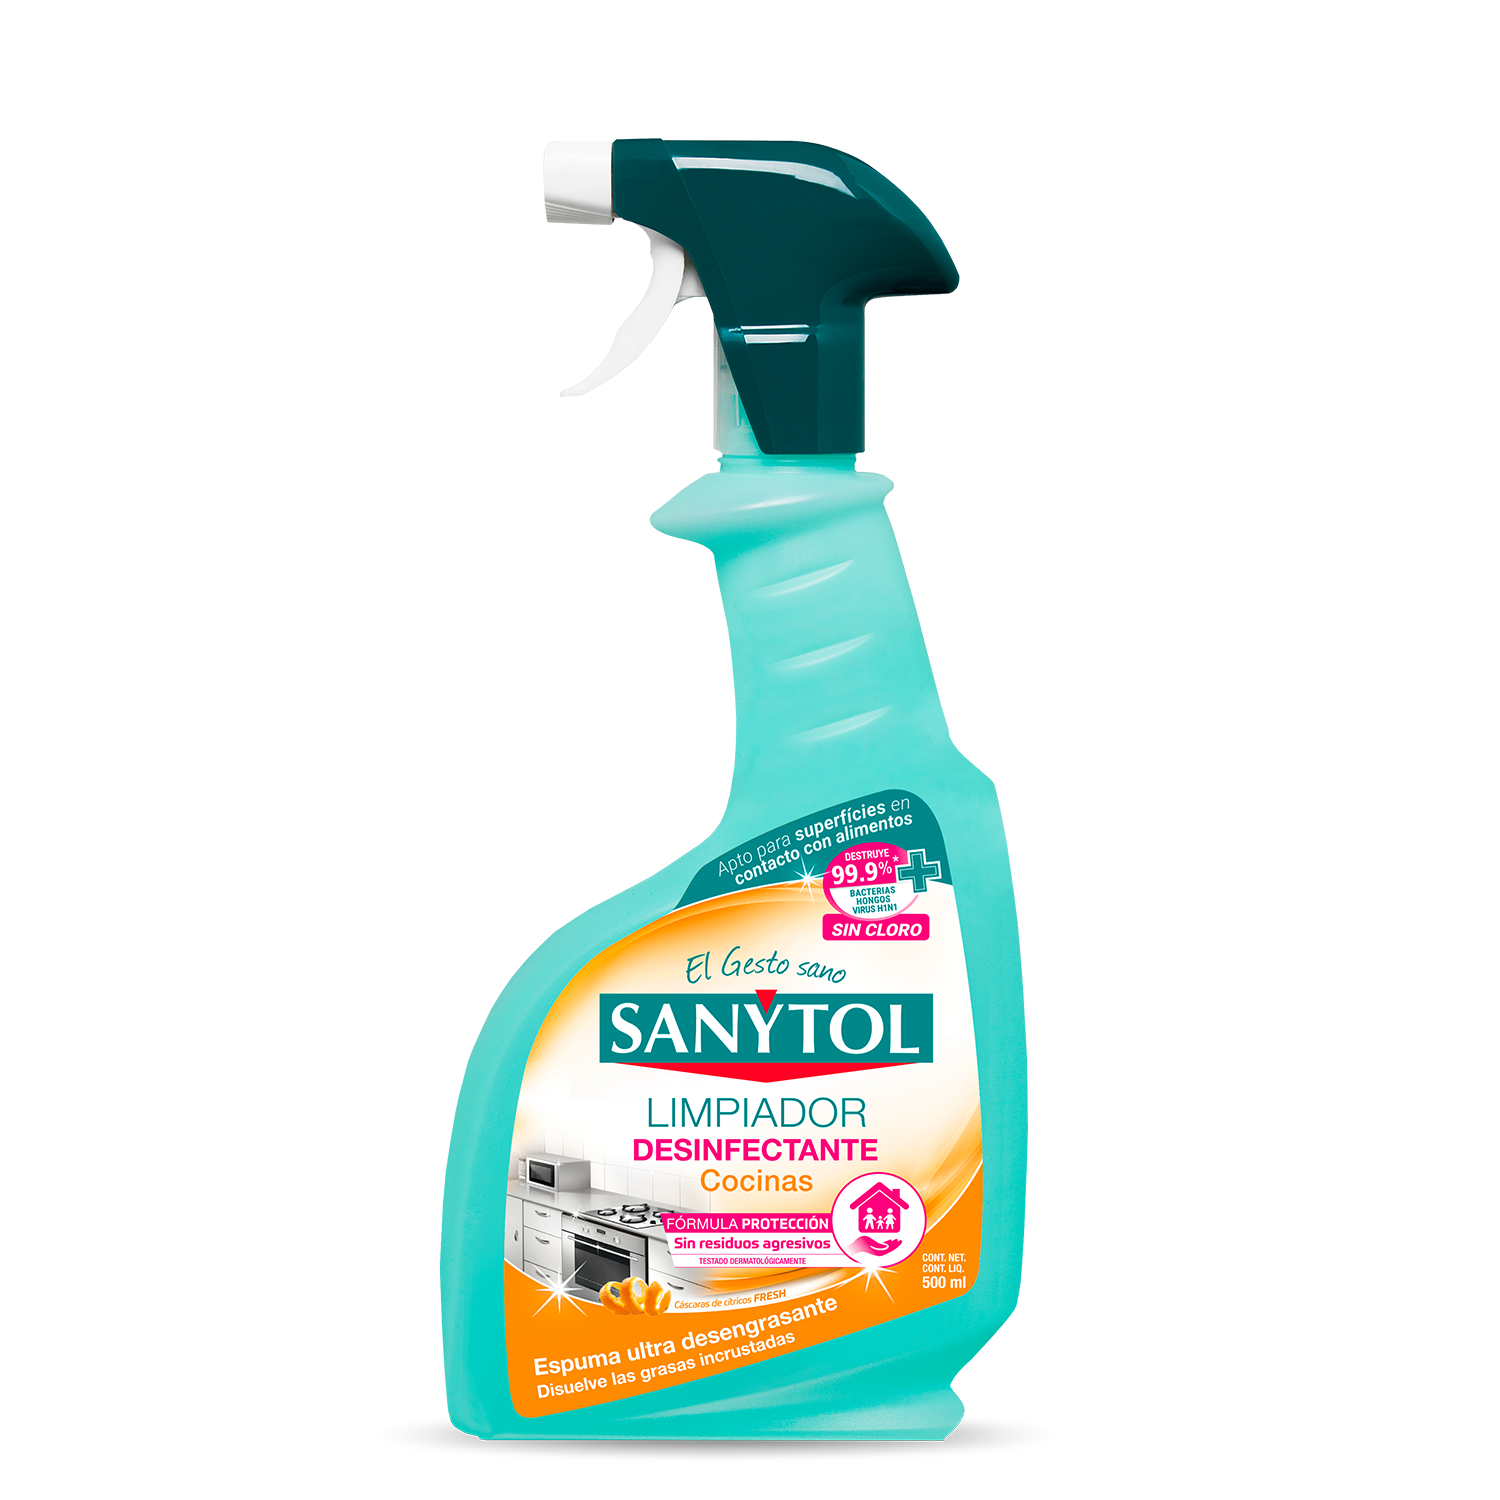 Sanytol - Lucir una cocina desinfectada y sin grasa nunca ha sido tan  fácil🍽 Con Sanytol Cocinas limpias, desengrasas y desinfectas de una sola  pasada, eliminando el 99,9% de gérmenes. ✓Eficaz contra virus